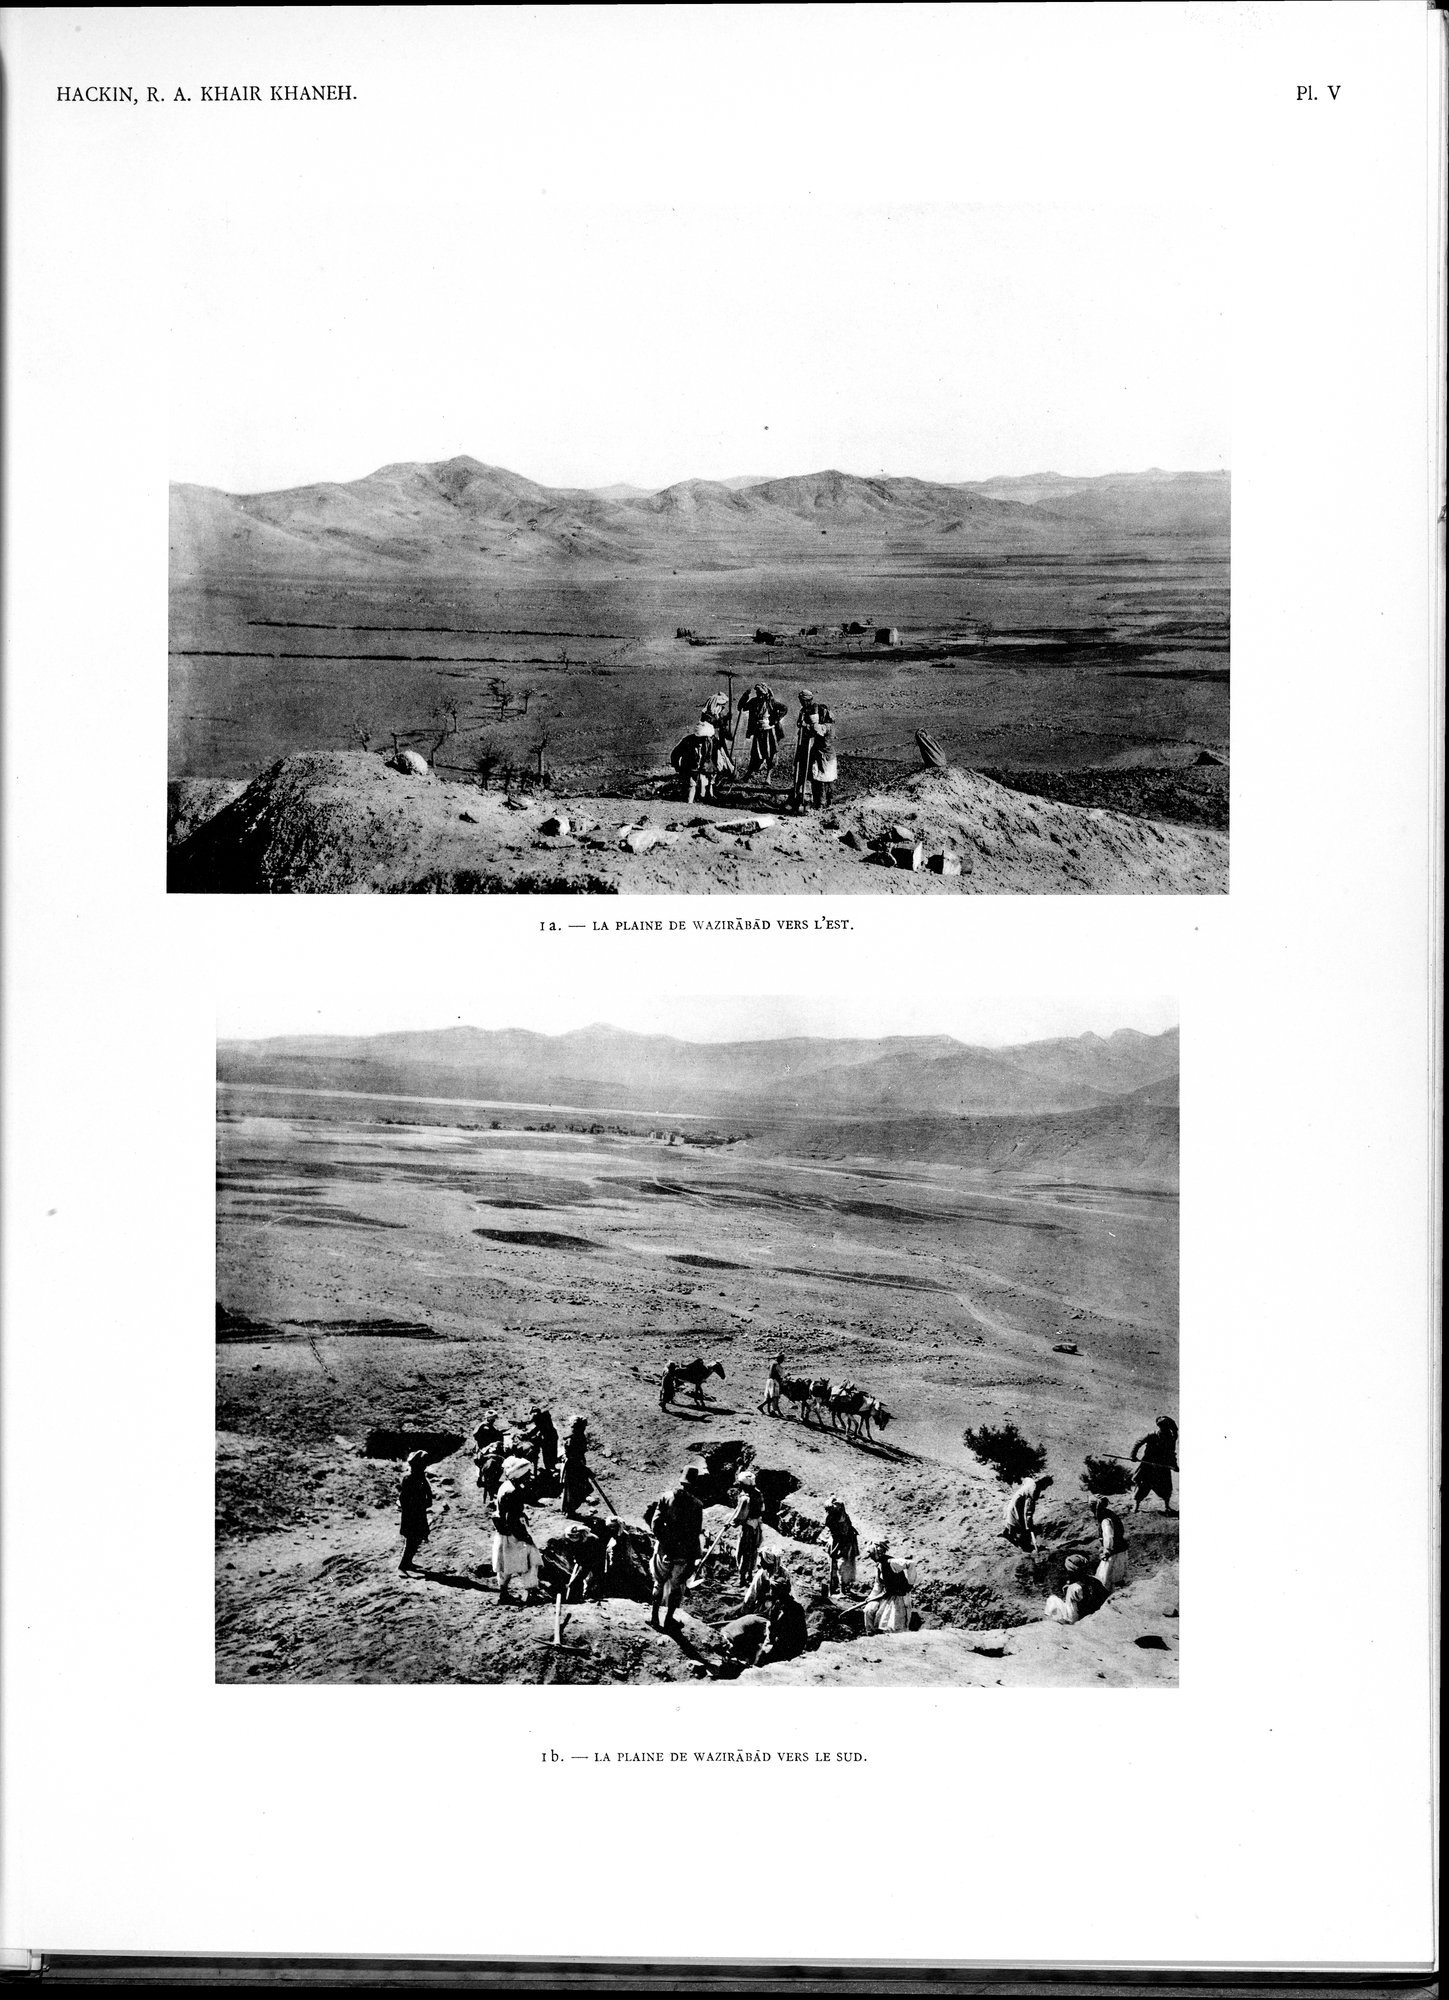 Recherches Archéologiques au Col de Khair khaneh près de Kābul : vol.1 / Page 59 (Grayscale High Resolution Image)